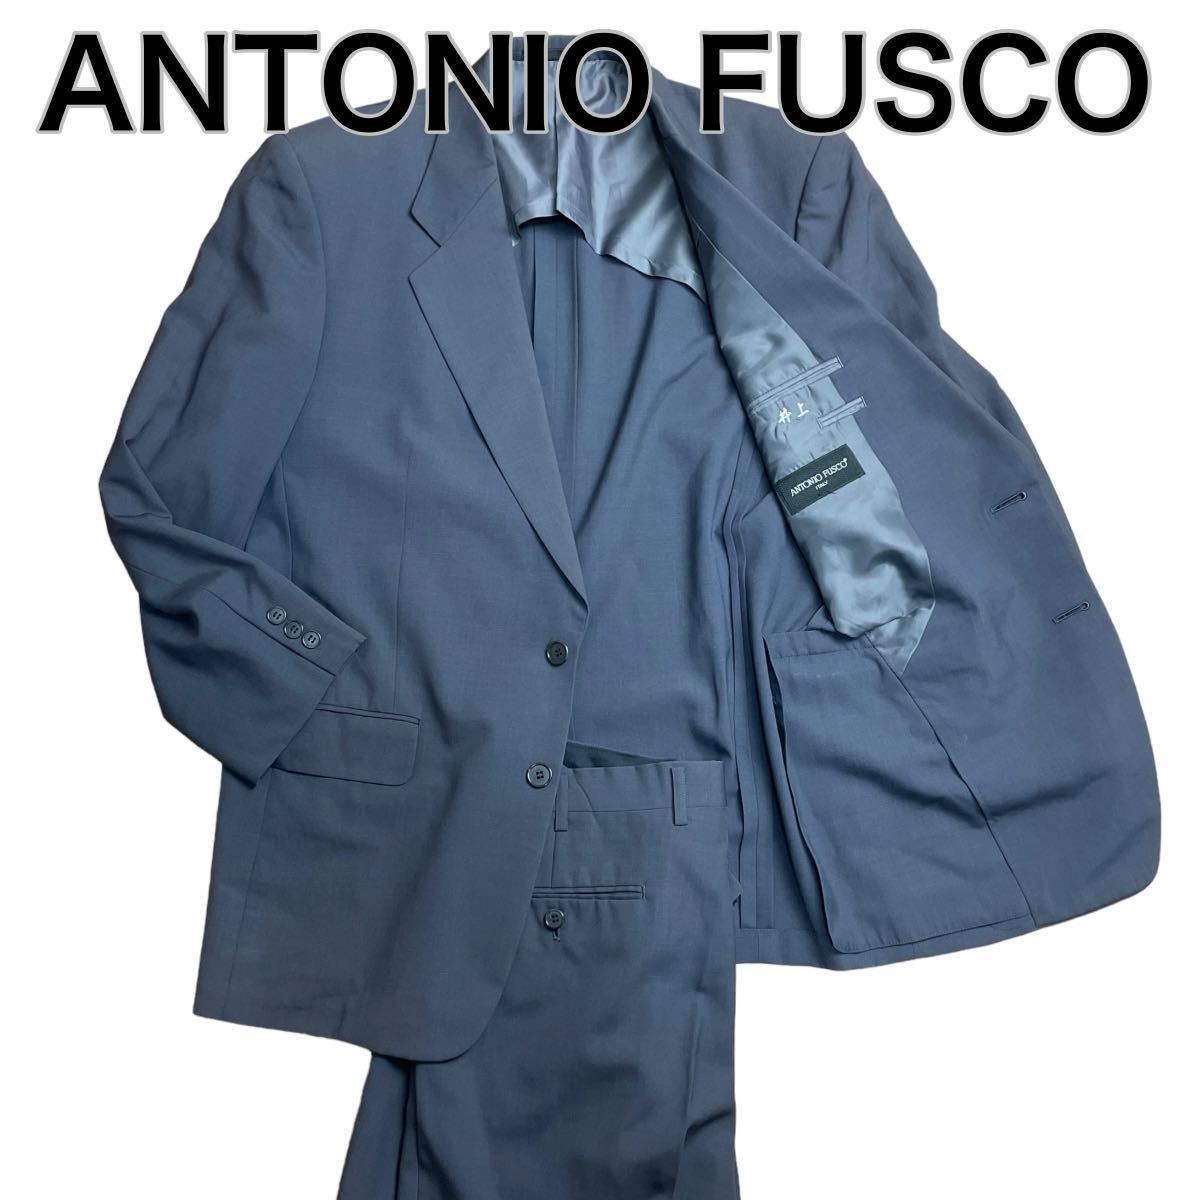 ANTONIO FUSCO アントニオフスコ セットアップ スーツ ネイビーグレー L_画像1